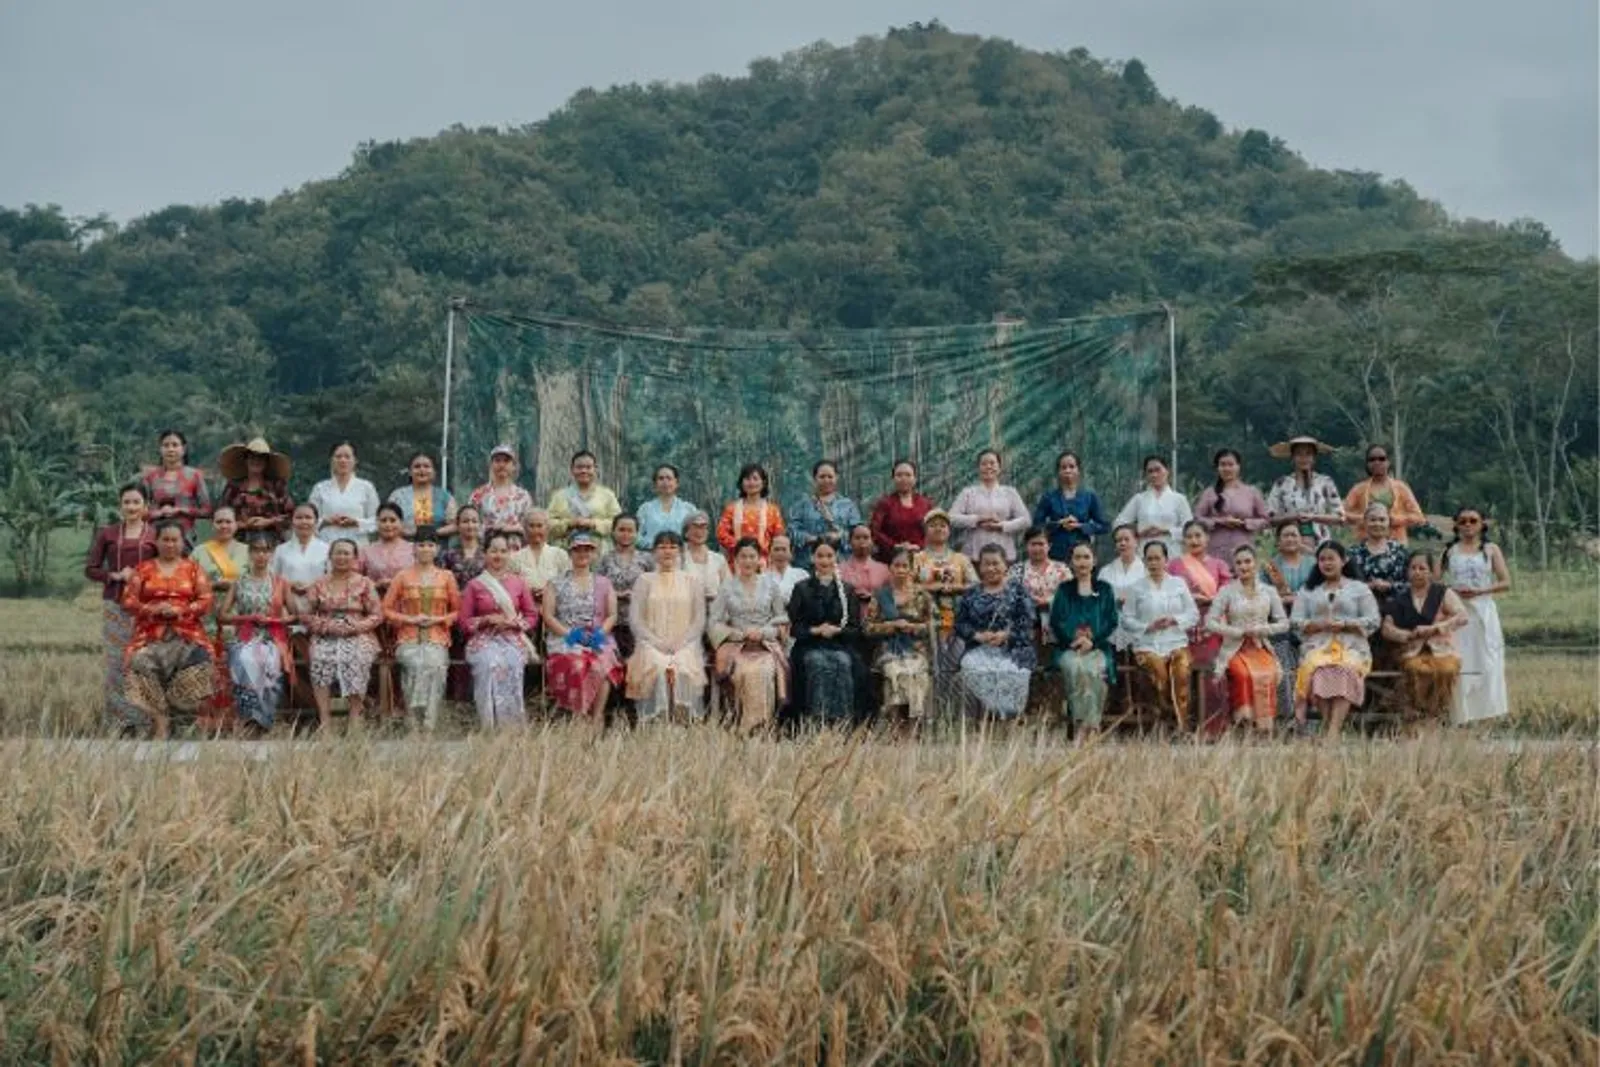 Bakti Budaya Djarum Foundation Rilis Film Mengisahkan Kebaya Indonesia